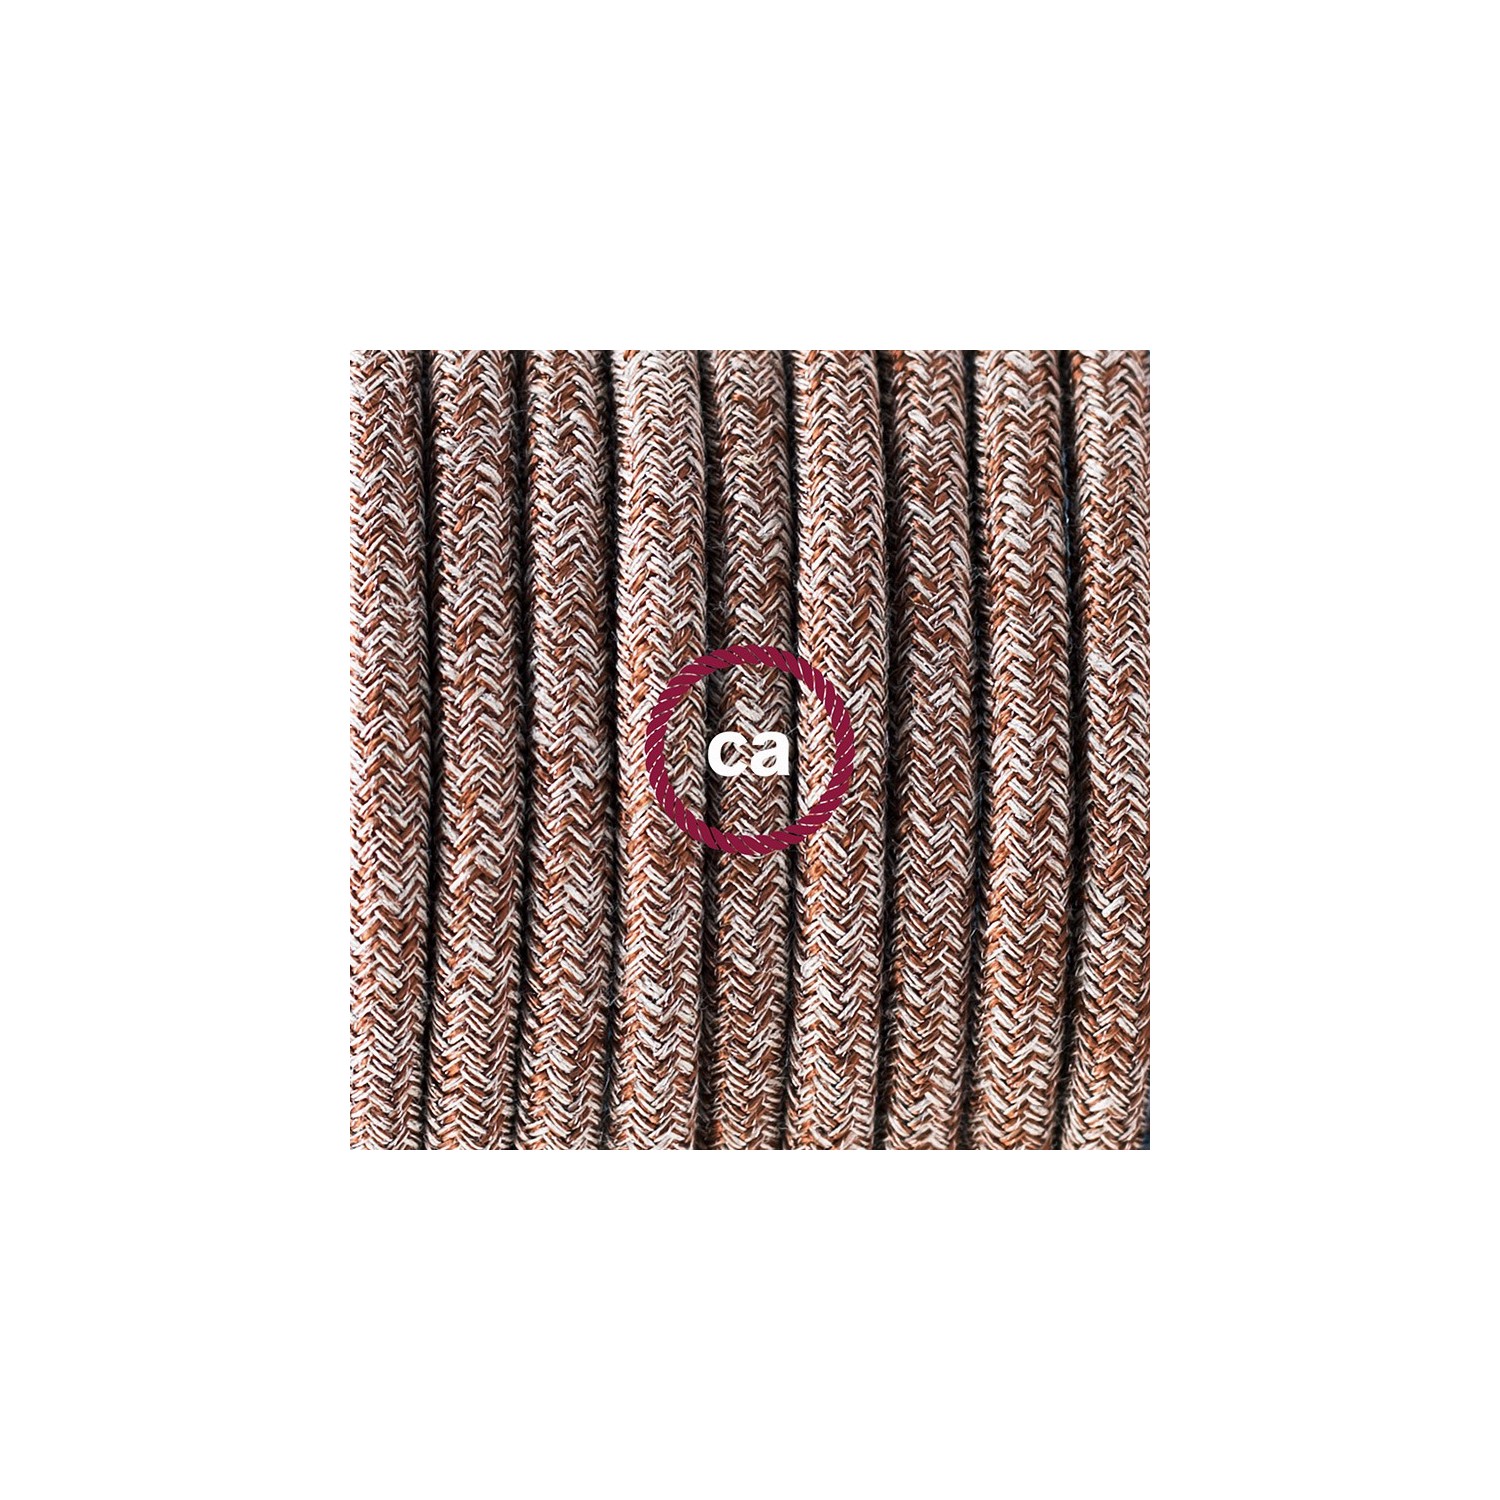 Sladdställ med fotströmbrytare, RS82 Brun glittrig Tweed Bomull och naturligt linne 3 m. Välj färg på strömbrytare och kontakt